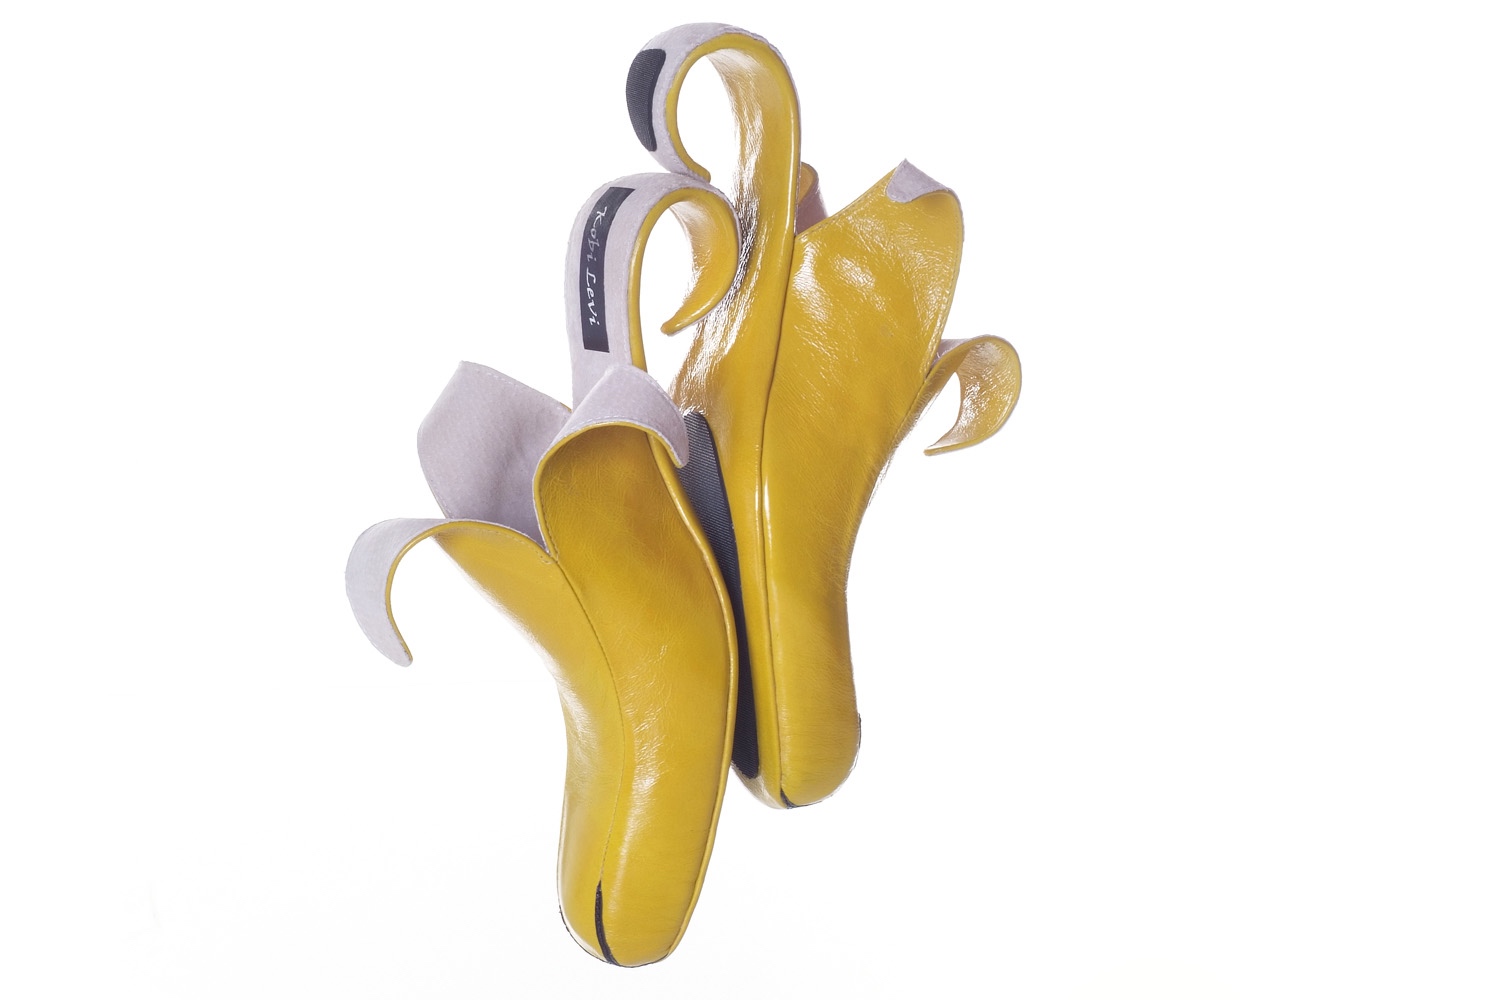 Kobi Levi Banana Shoes